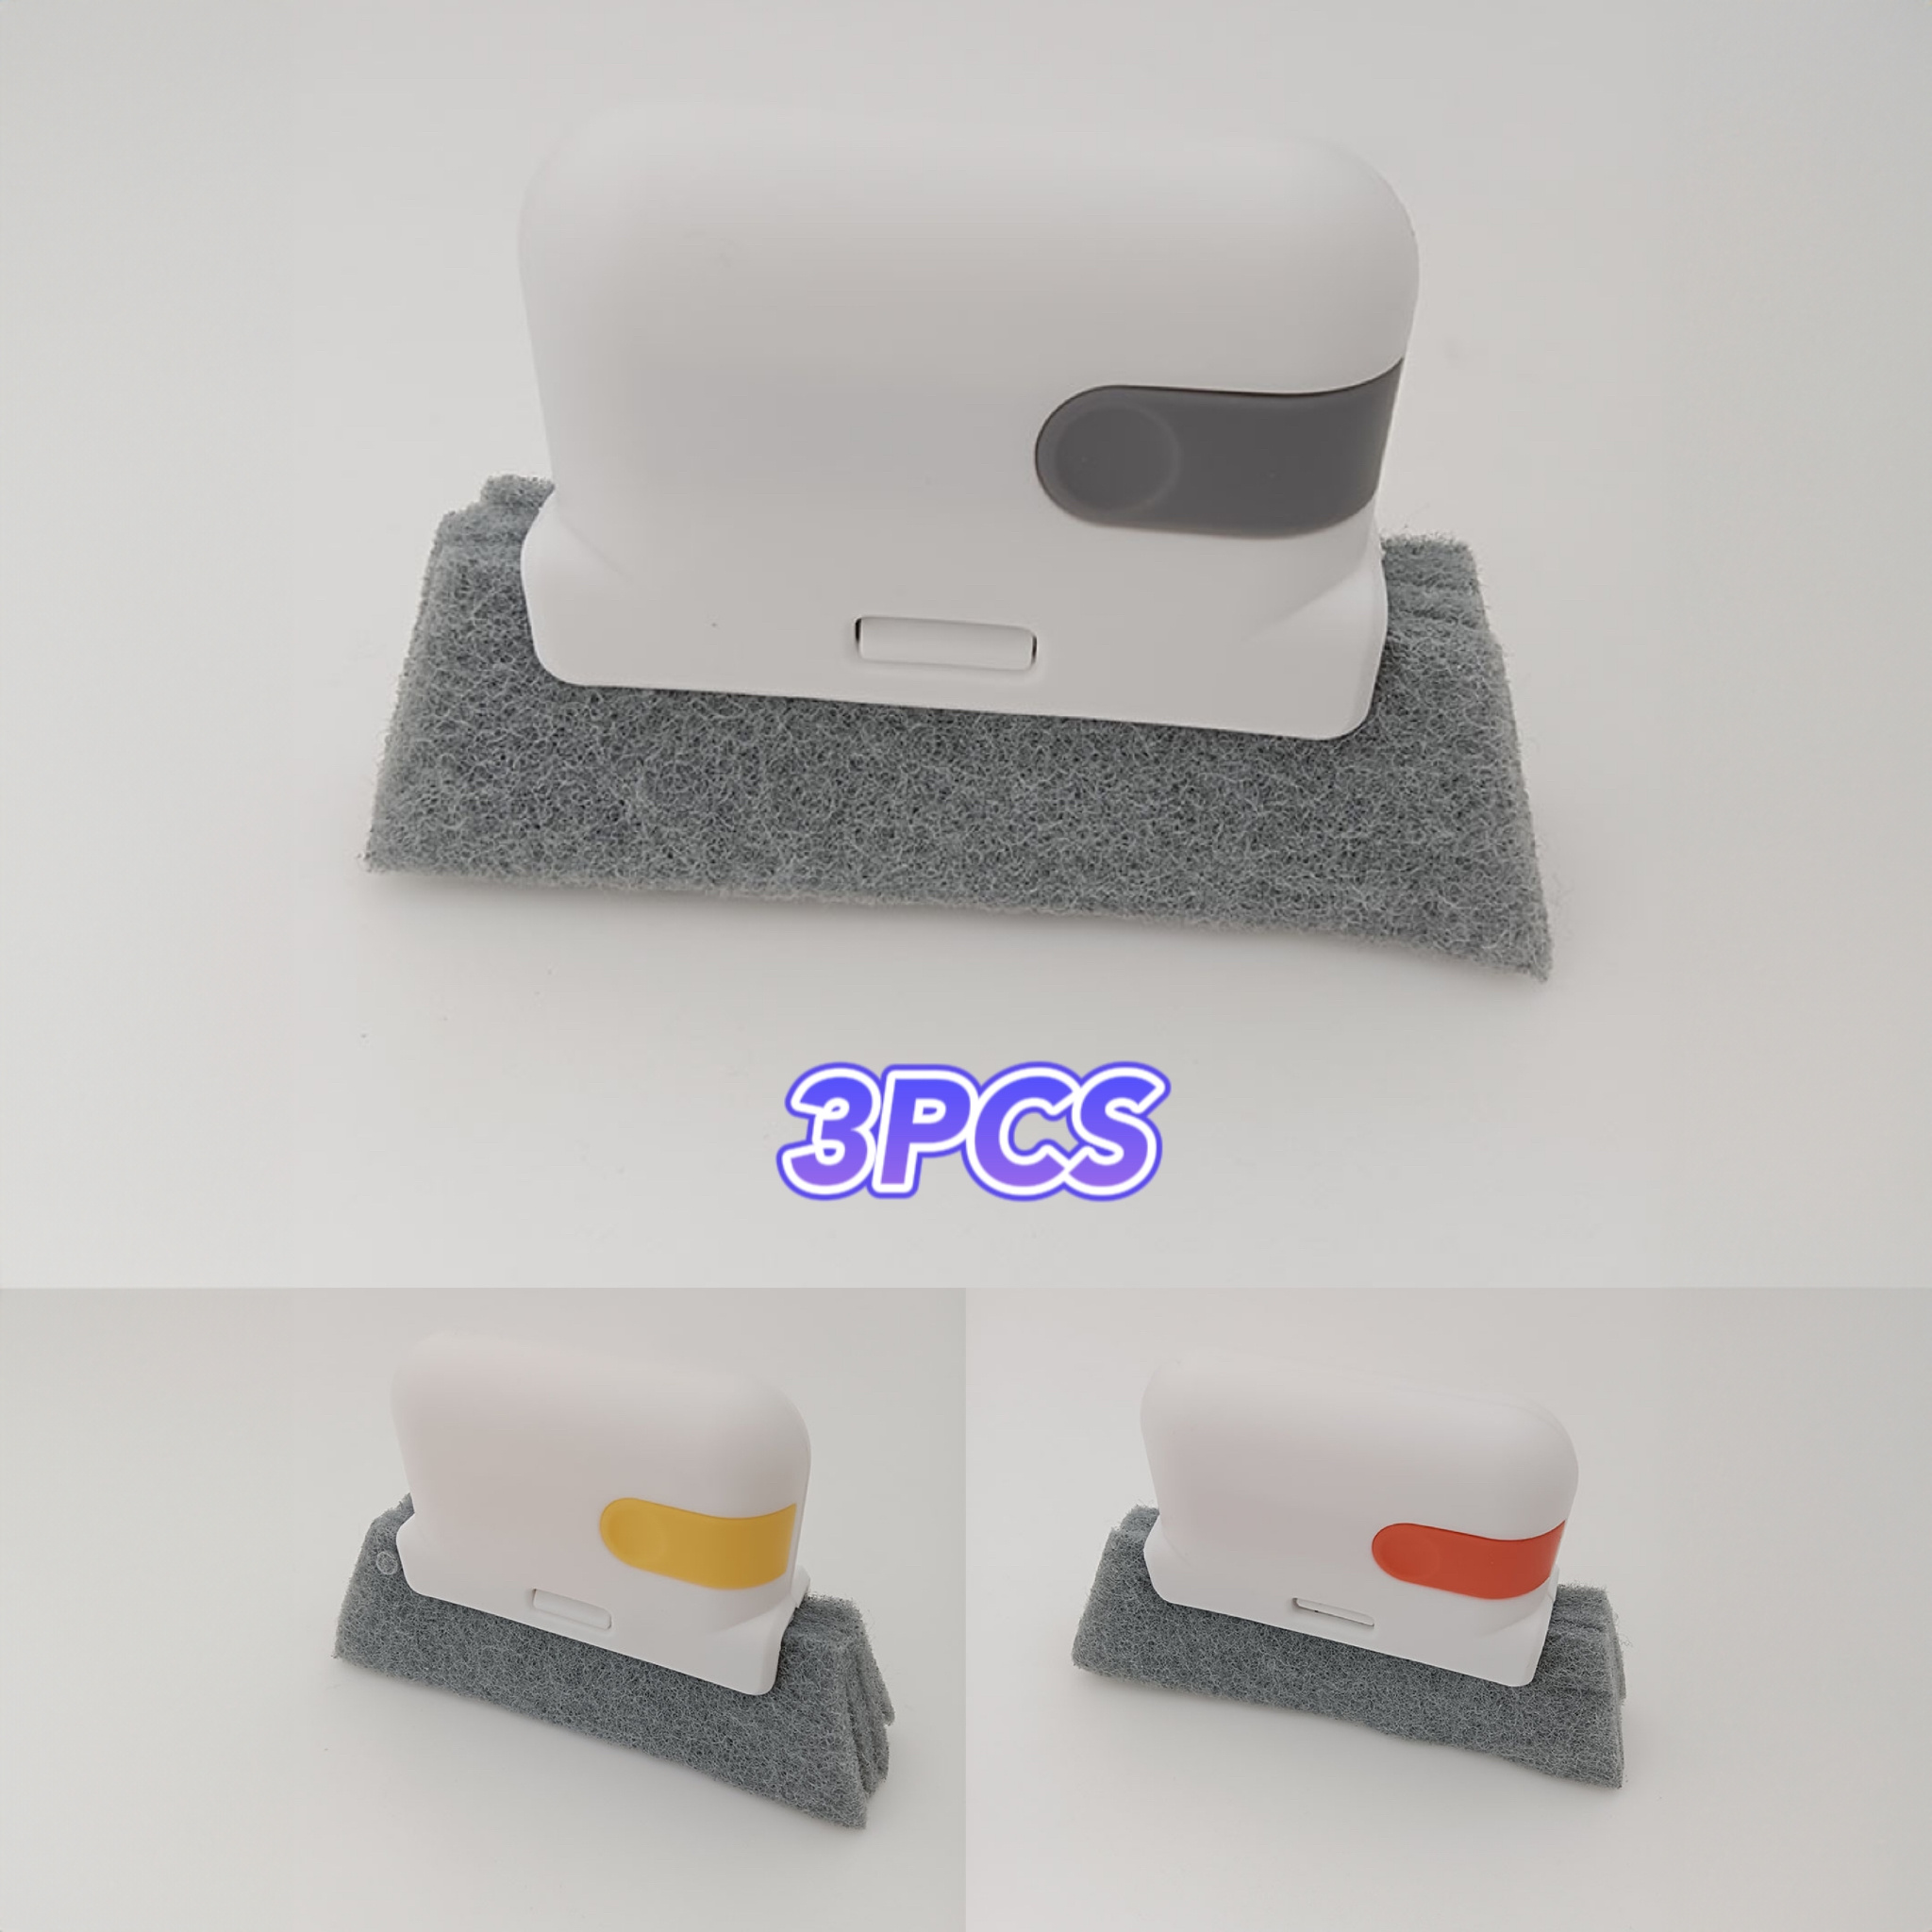 BES-32994 - Ordine e pulizia - beselettronica - Spazzola Finestre Kit  Pulizia Angoli Scanalature Tapparelle Fessure Polvere